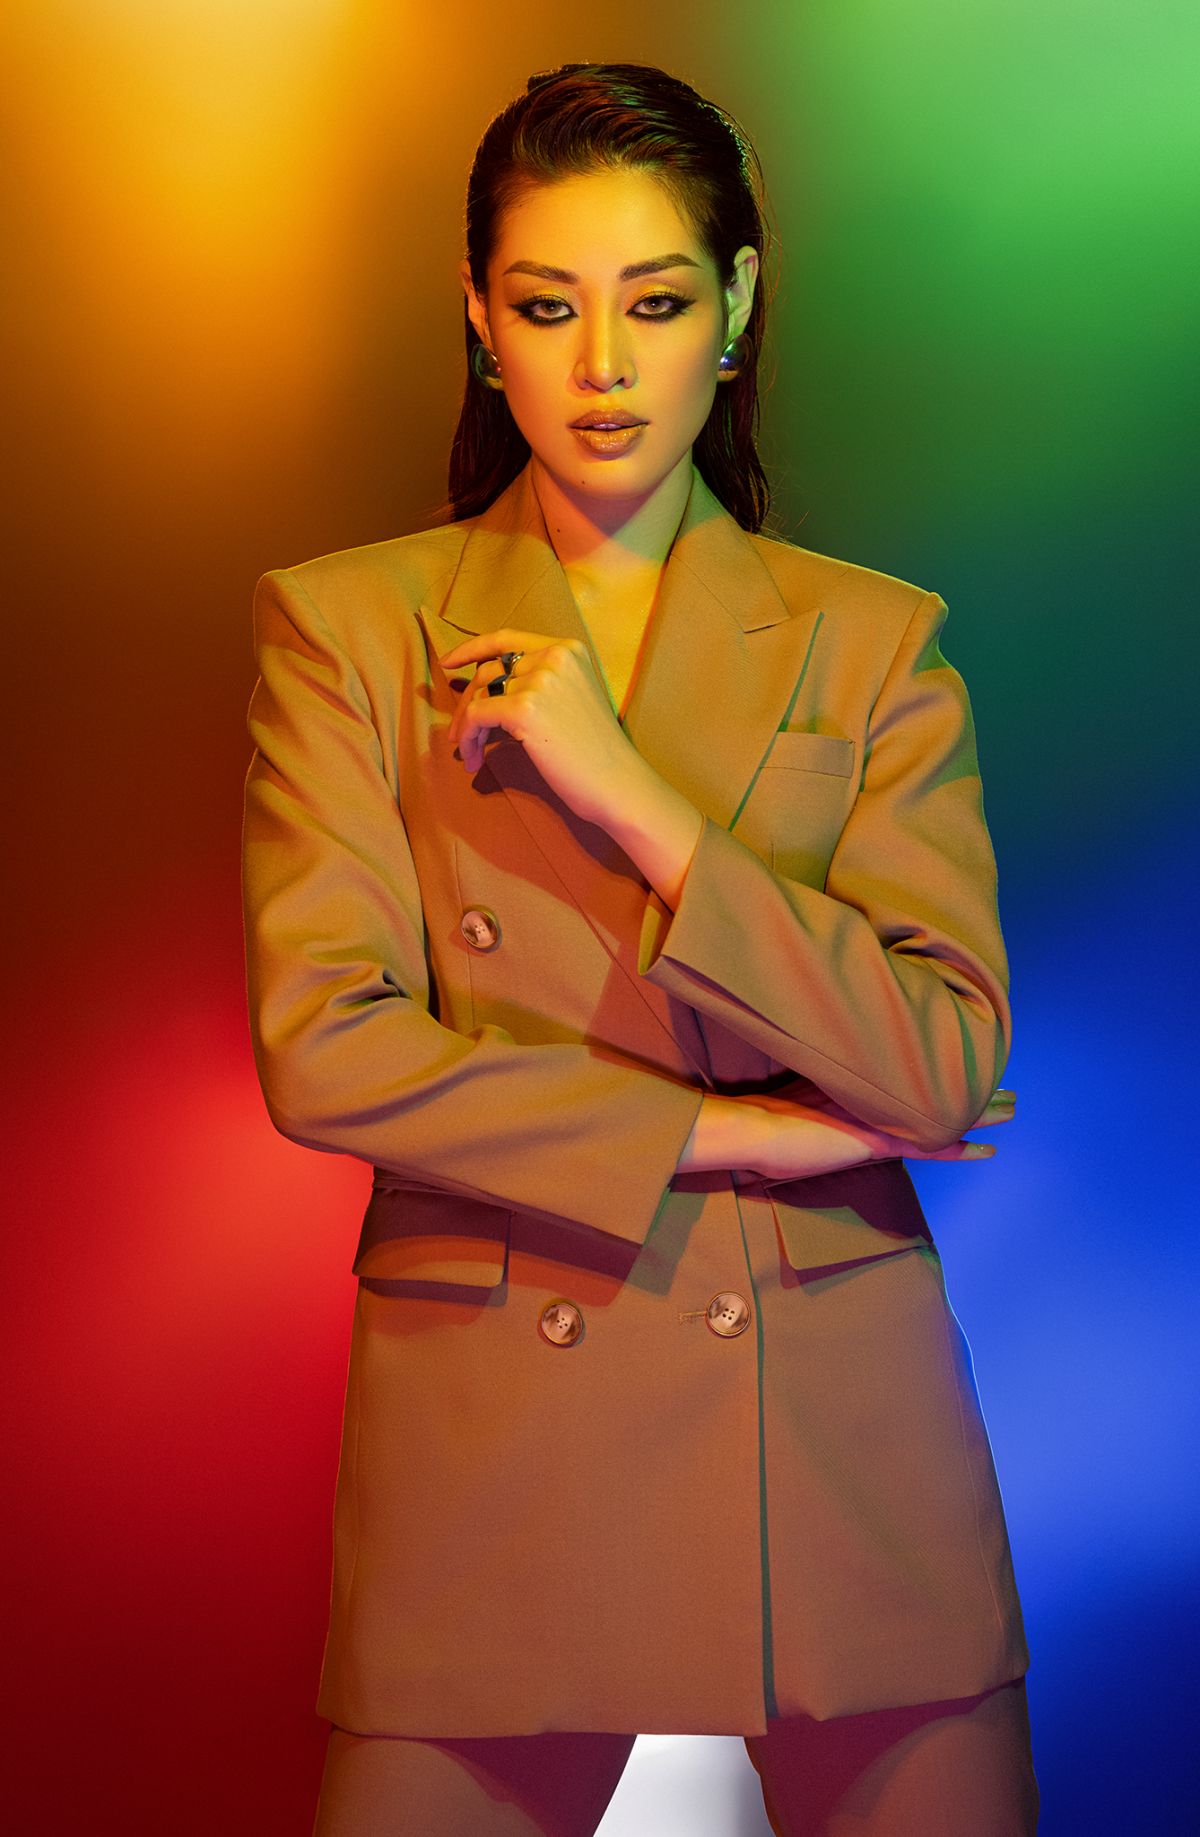 Hoa hậu Khánh Vân khoe nhan sắc mới lạ trong bộ ảnh cá tính đầy ấn tượng